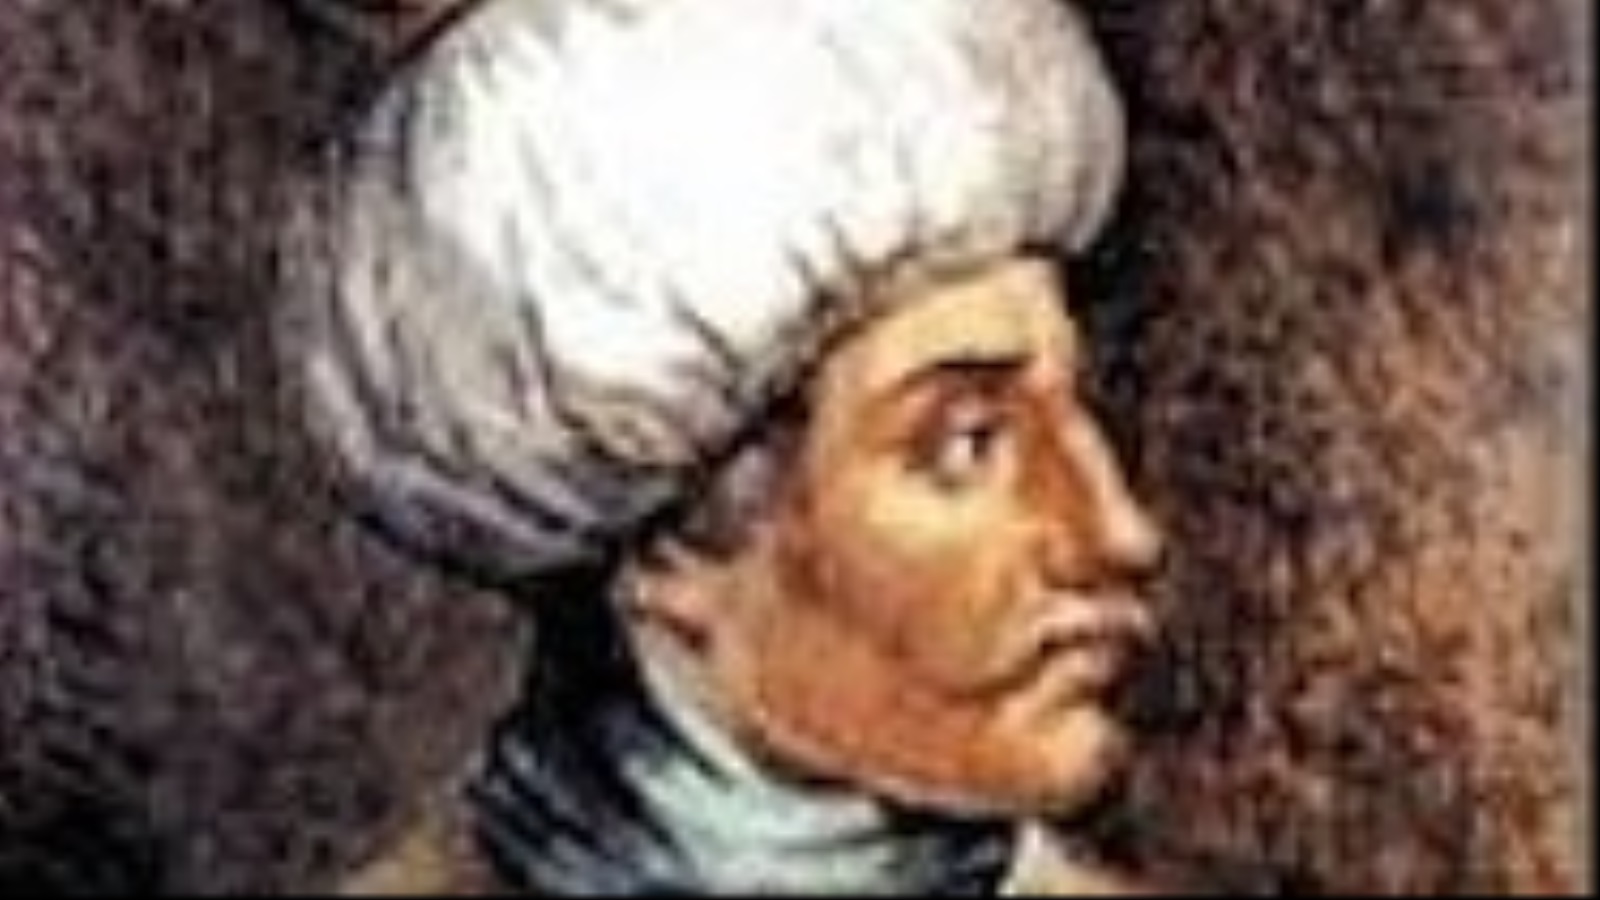 كان والي الجزائر أولوج باشا يقود الجناح الأيمن للأسطول، واستطاع بمهارته، ورغم إطباق الأسطول الأوروبي على سفنه، أن ينتصر على عدد لا يستهان منهم